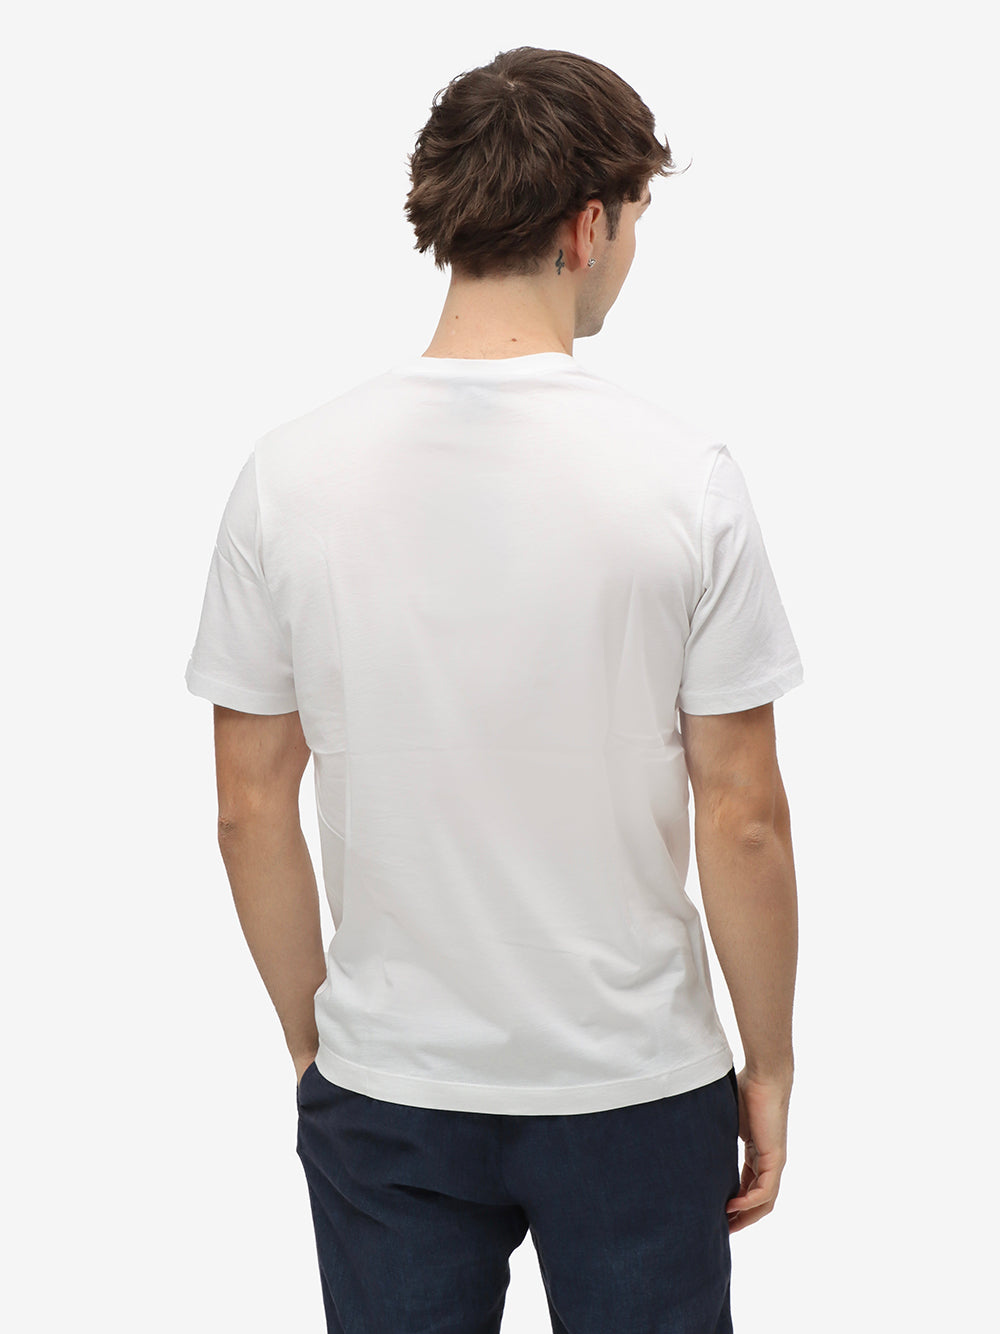 PAUL & SHARK T-Shirt Uomo Cotone Patch Logo-Bianco